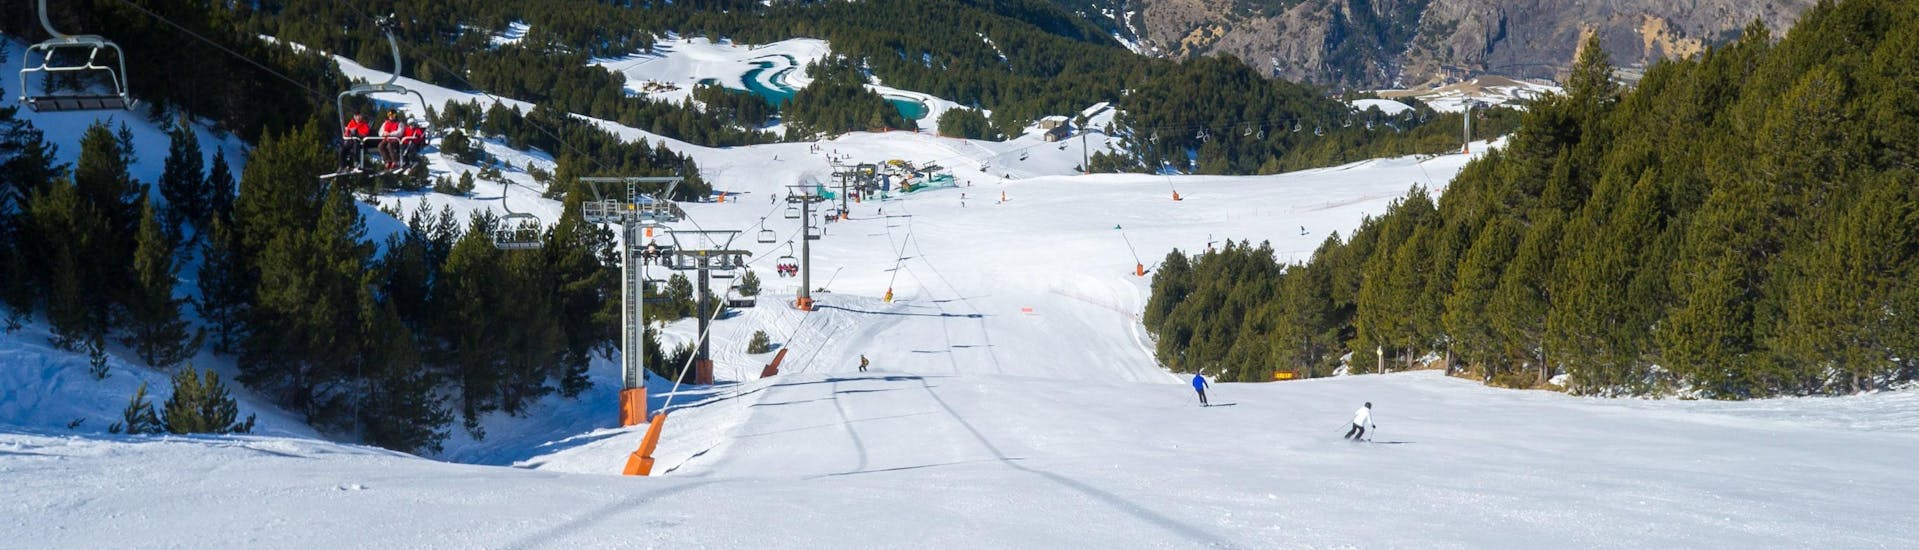 Skiërs op de pistes van Andorra naast een skilift.